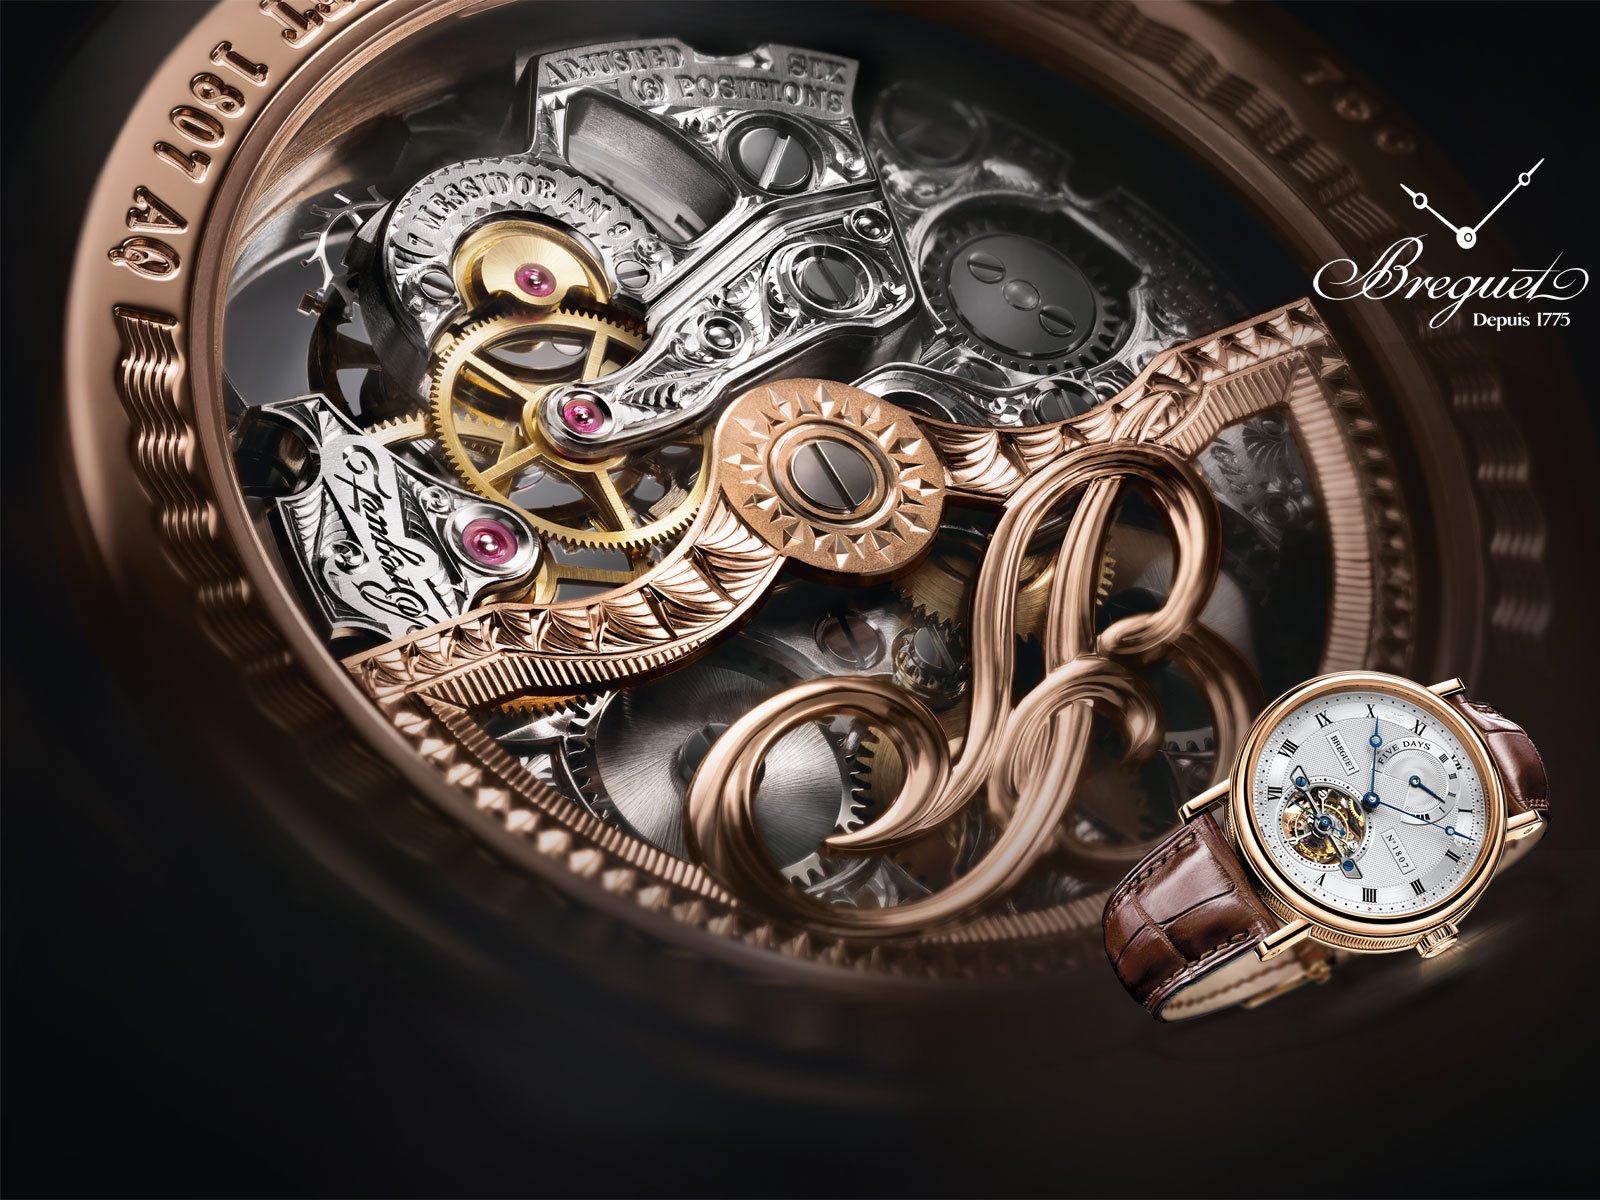 Breguet Watch Time Clock - Top 10 Beautiful Watches - HD Wallpaper 